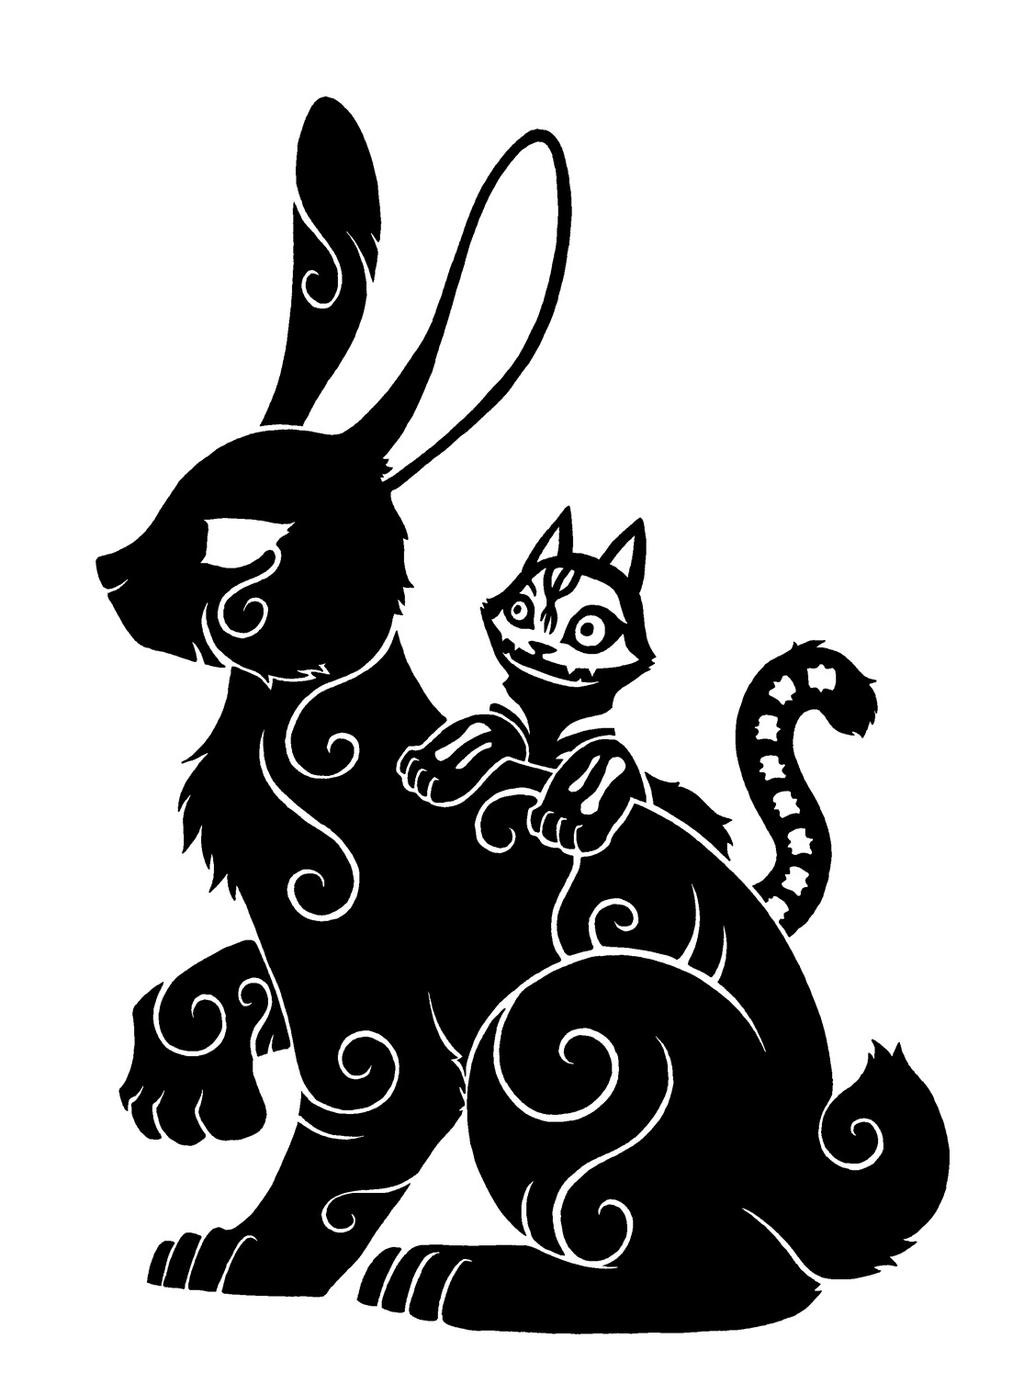 사라 크로울리와 스튜어트 헤이워드 - 큰 토끼와 작은 고양이